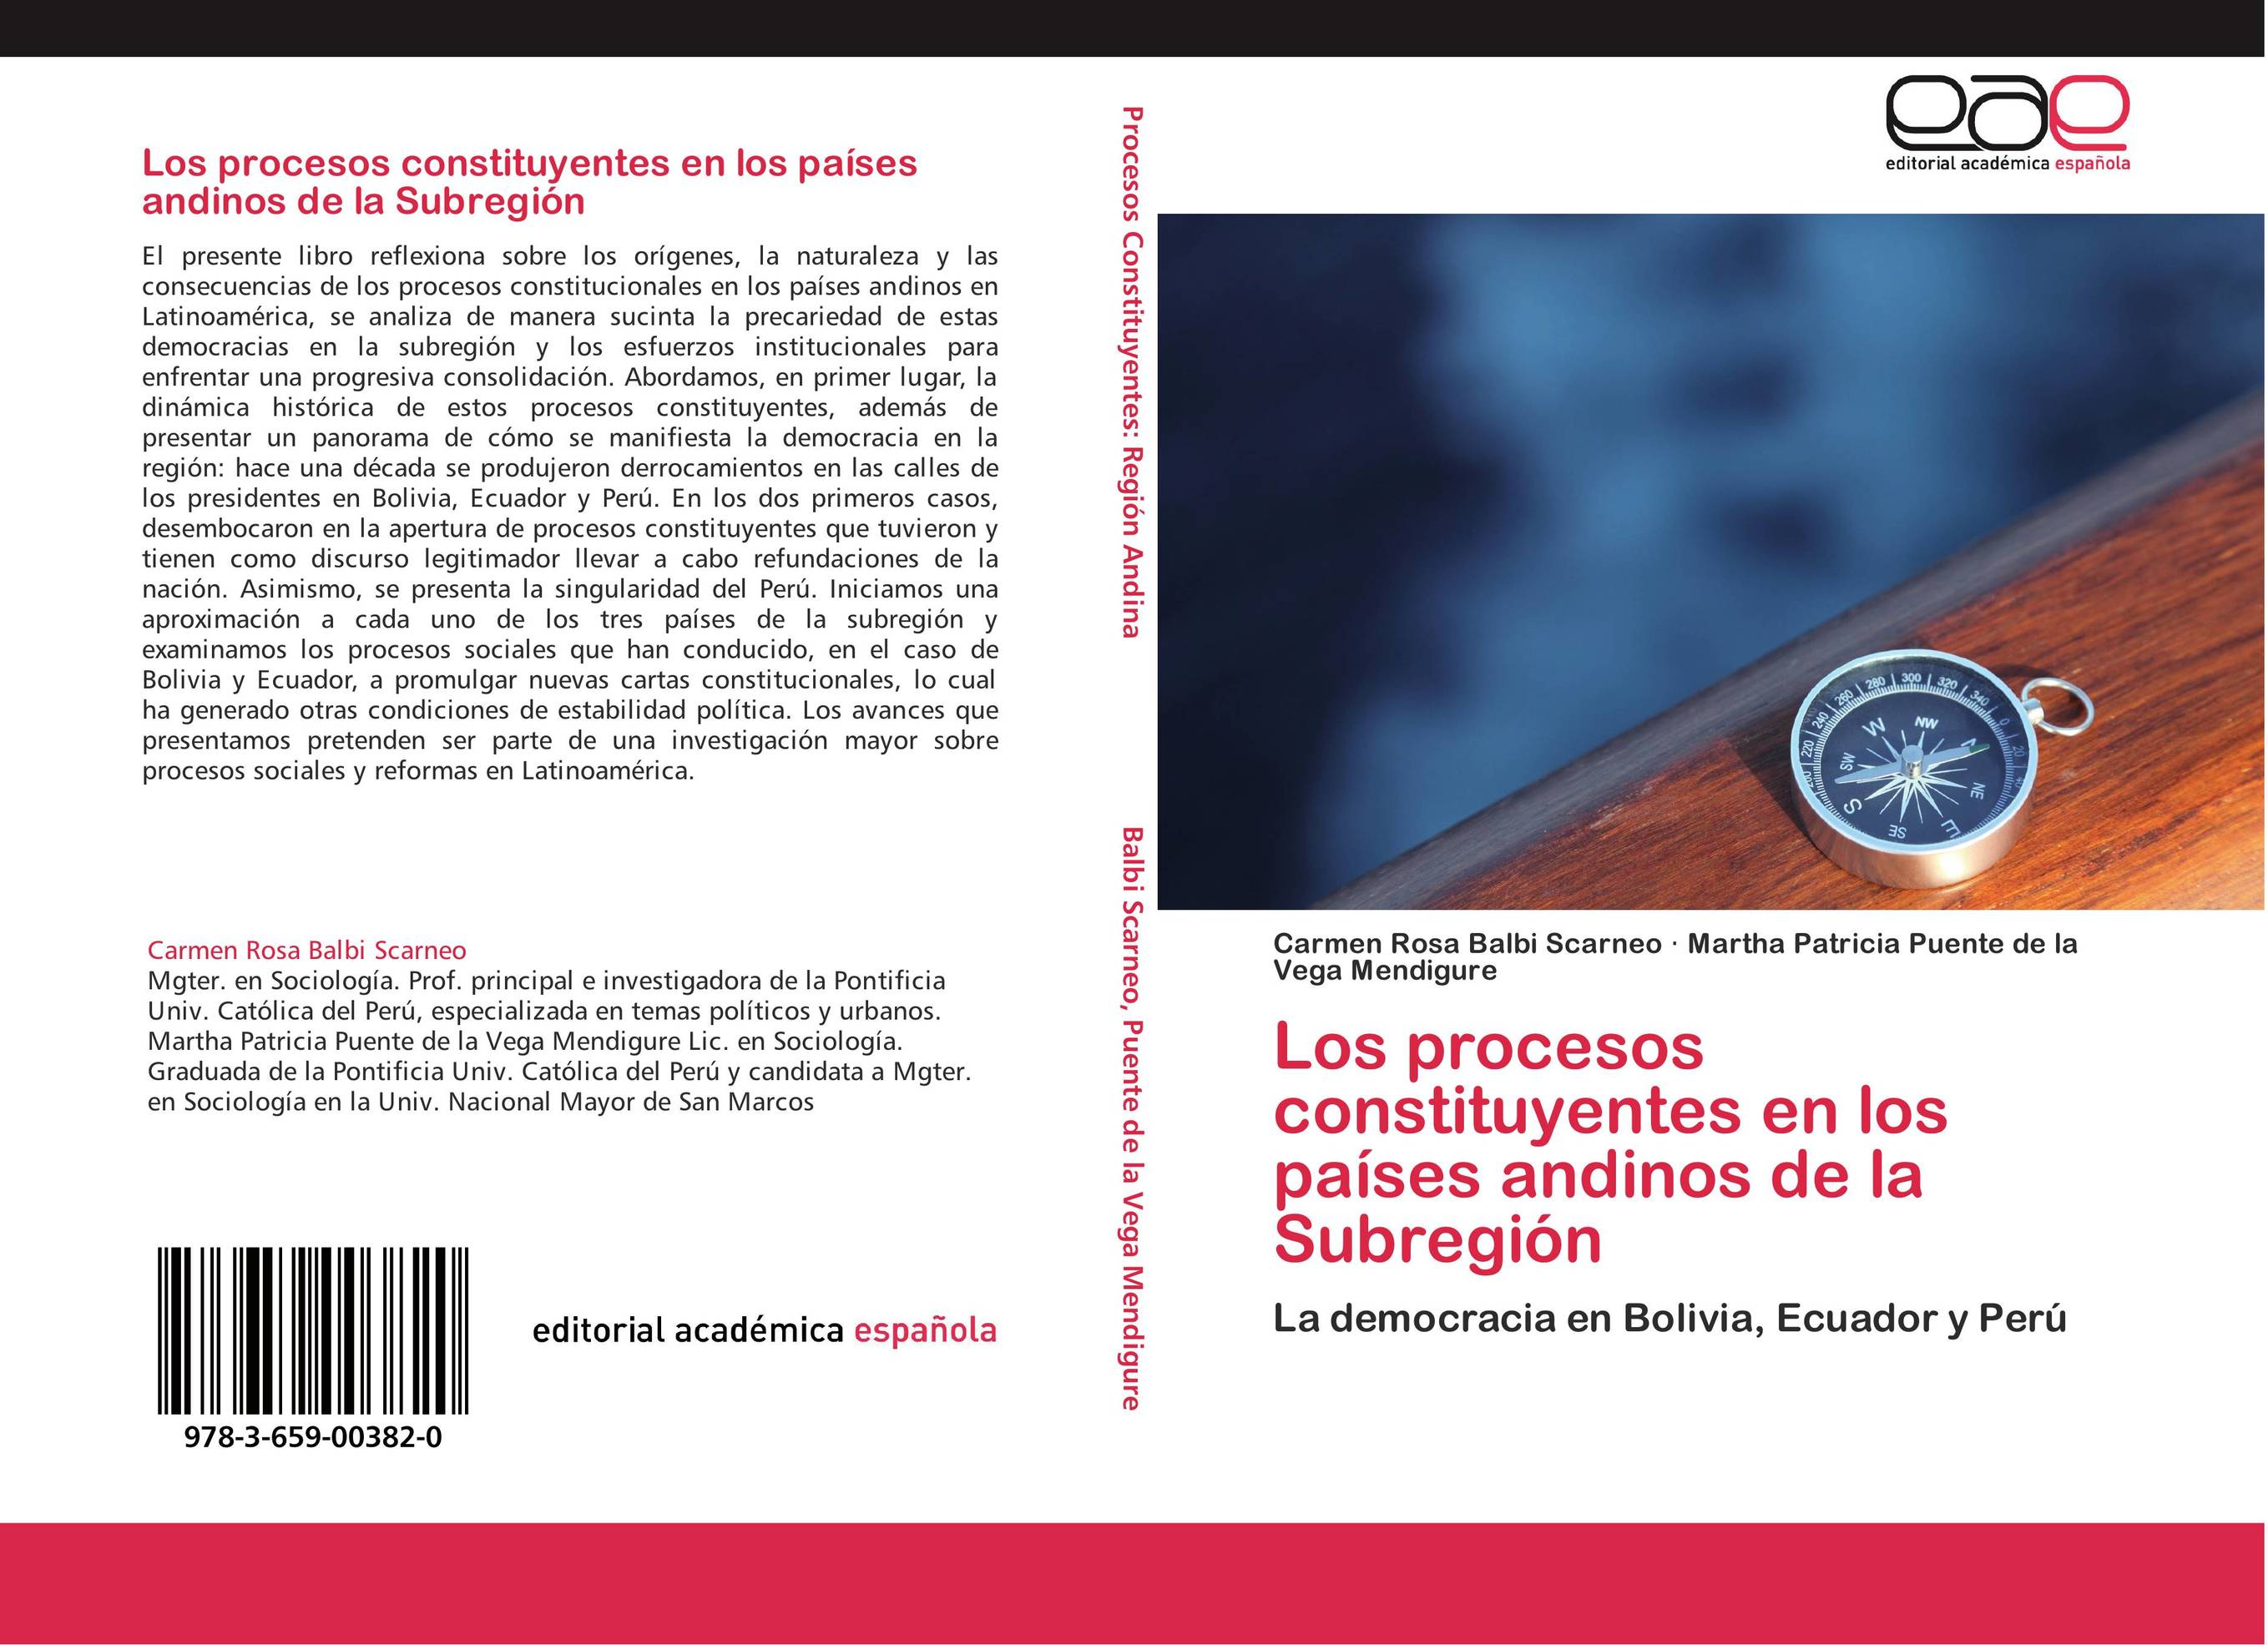 Los procesos constituyentes en los países andinos de la Subregión